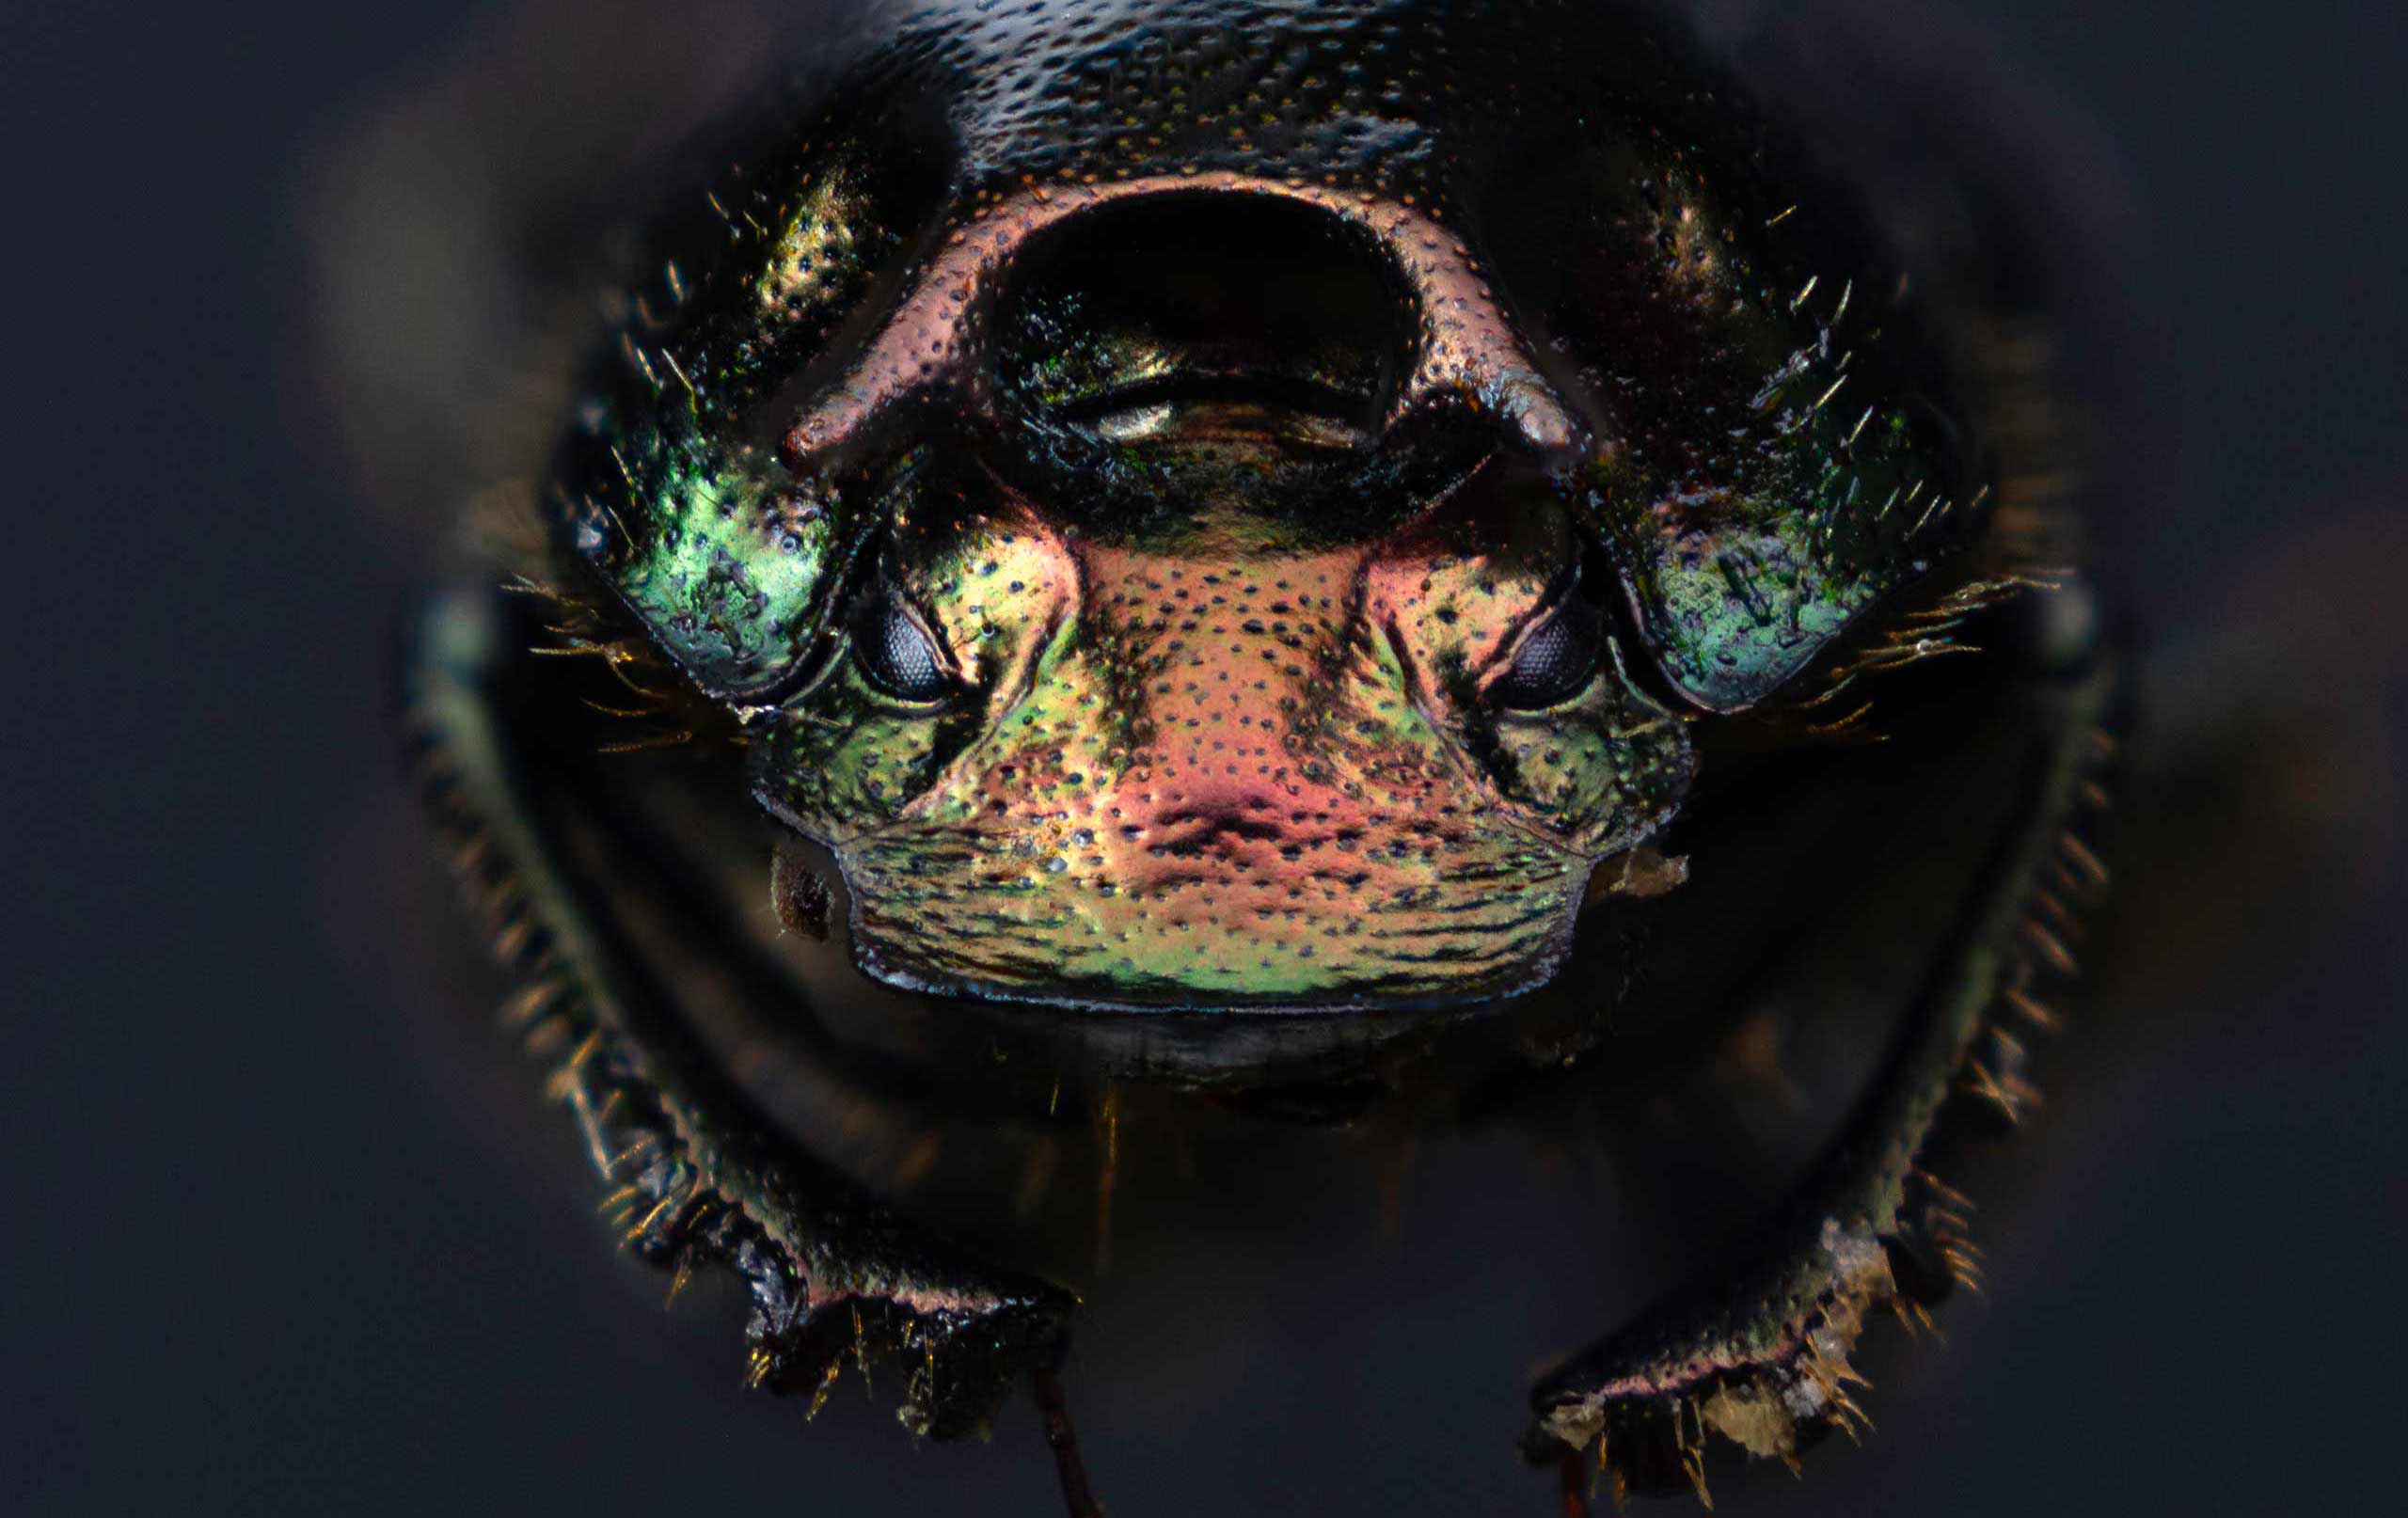 Onthophagus orpheus specimen, close-up view